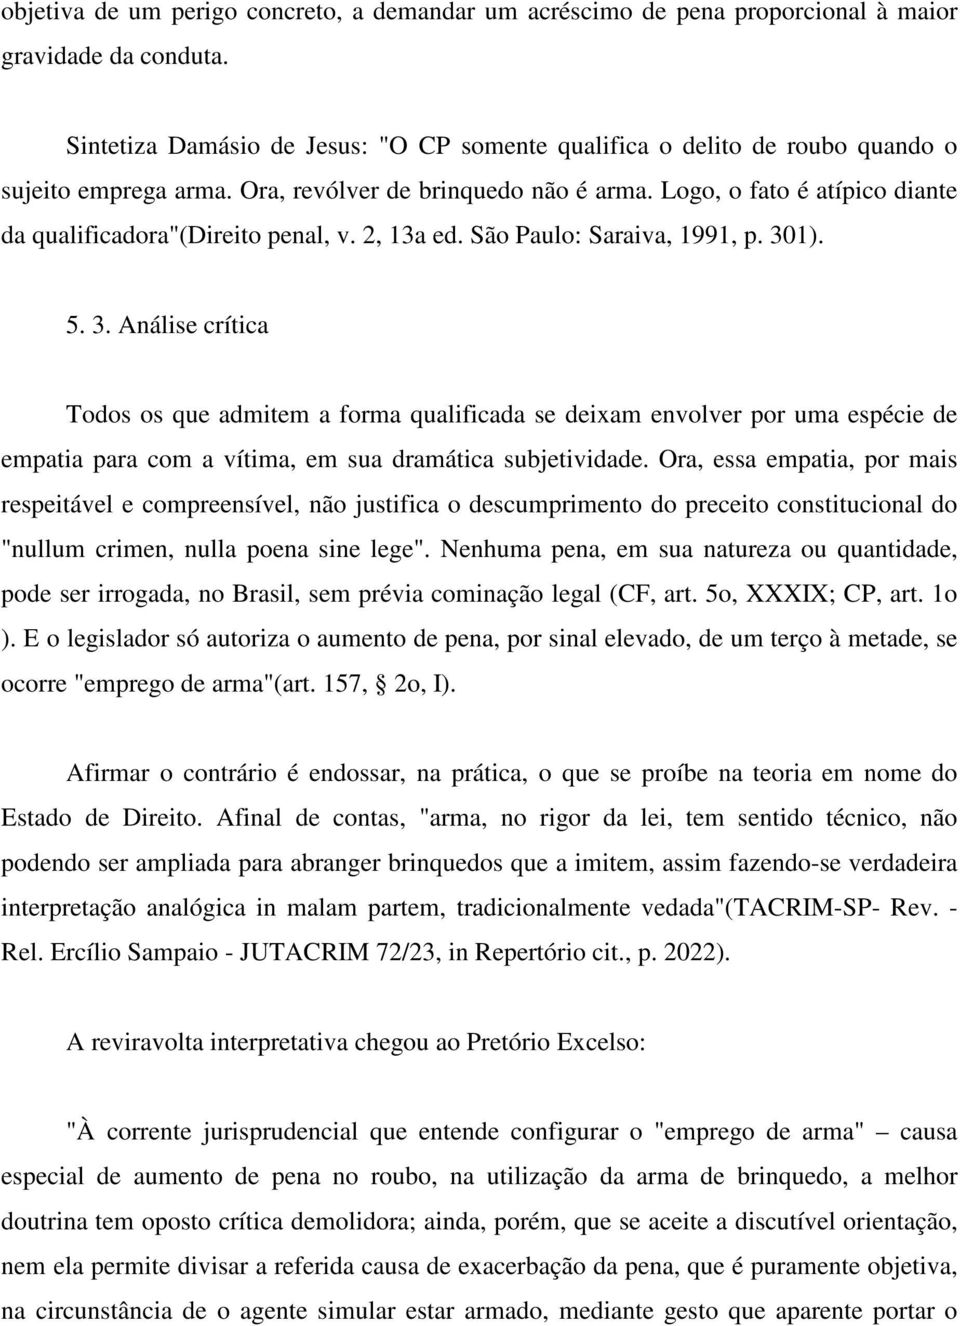 Logo, o fato é atípico diante da qualificadora"(direito penal, v. 2, 13a ed. São Paulo: Saraiva, 1991, p. 30